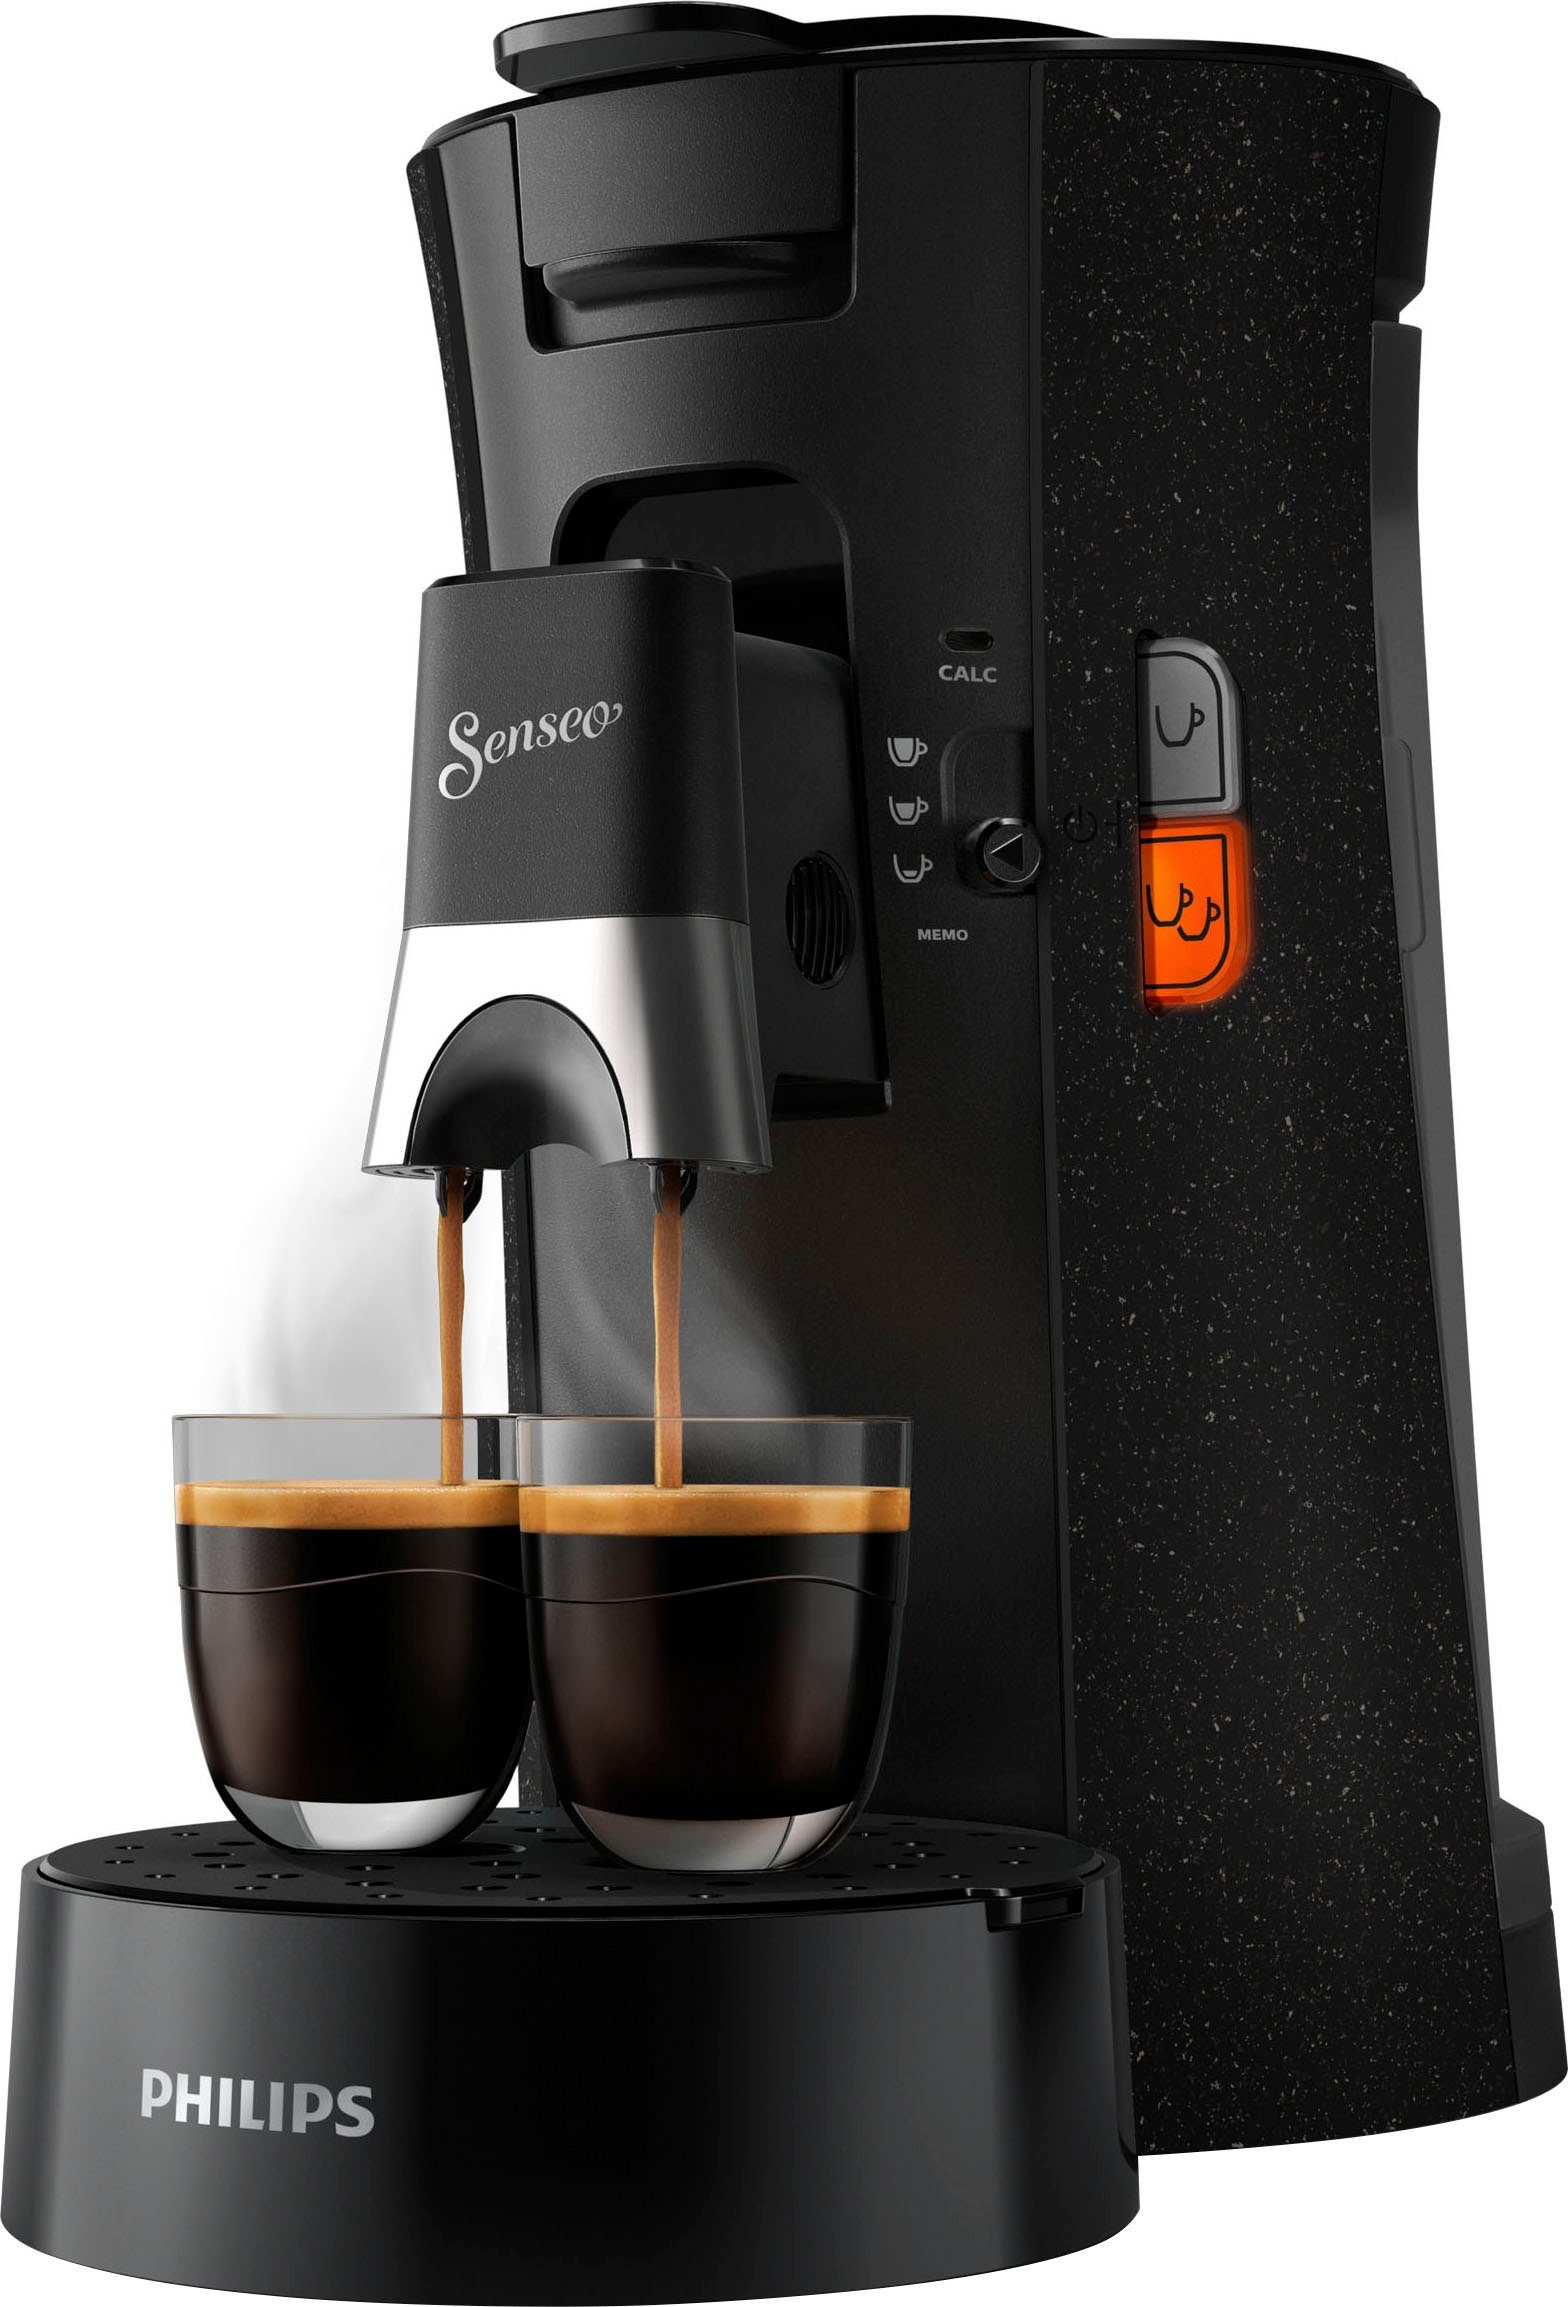 Gratis-Zugaben ECO (Wert Select +3 recyceltem Plastik, Kaffeespezialitäten, Senseo 37% CSA240/20, aus €14,-UVP) Memo-Funktion, Philips Kaffeepadmaschine